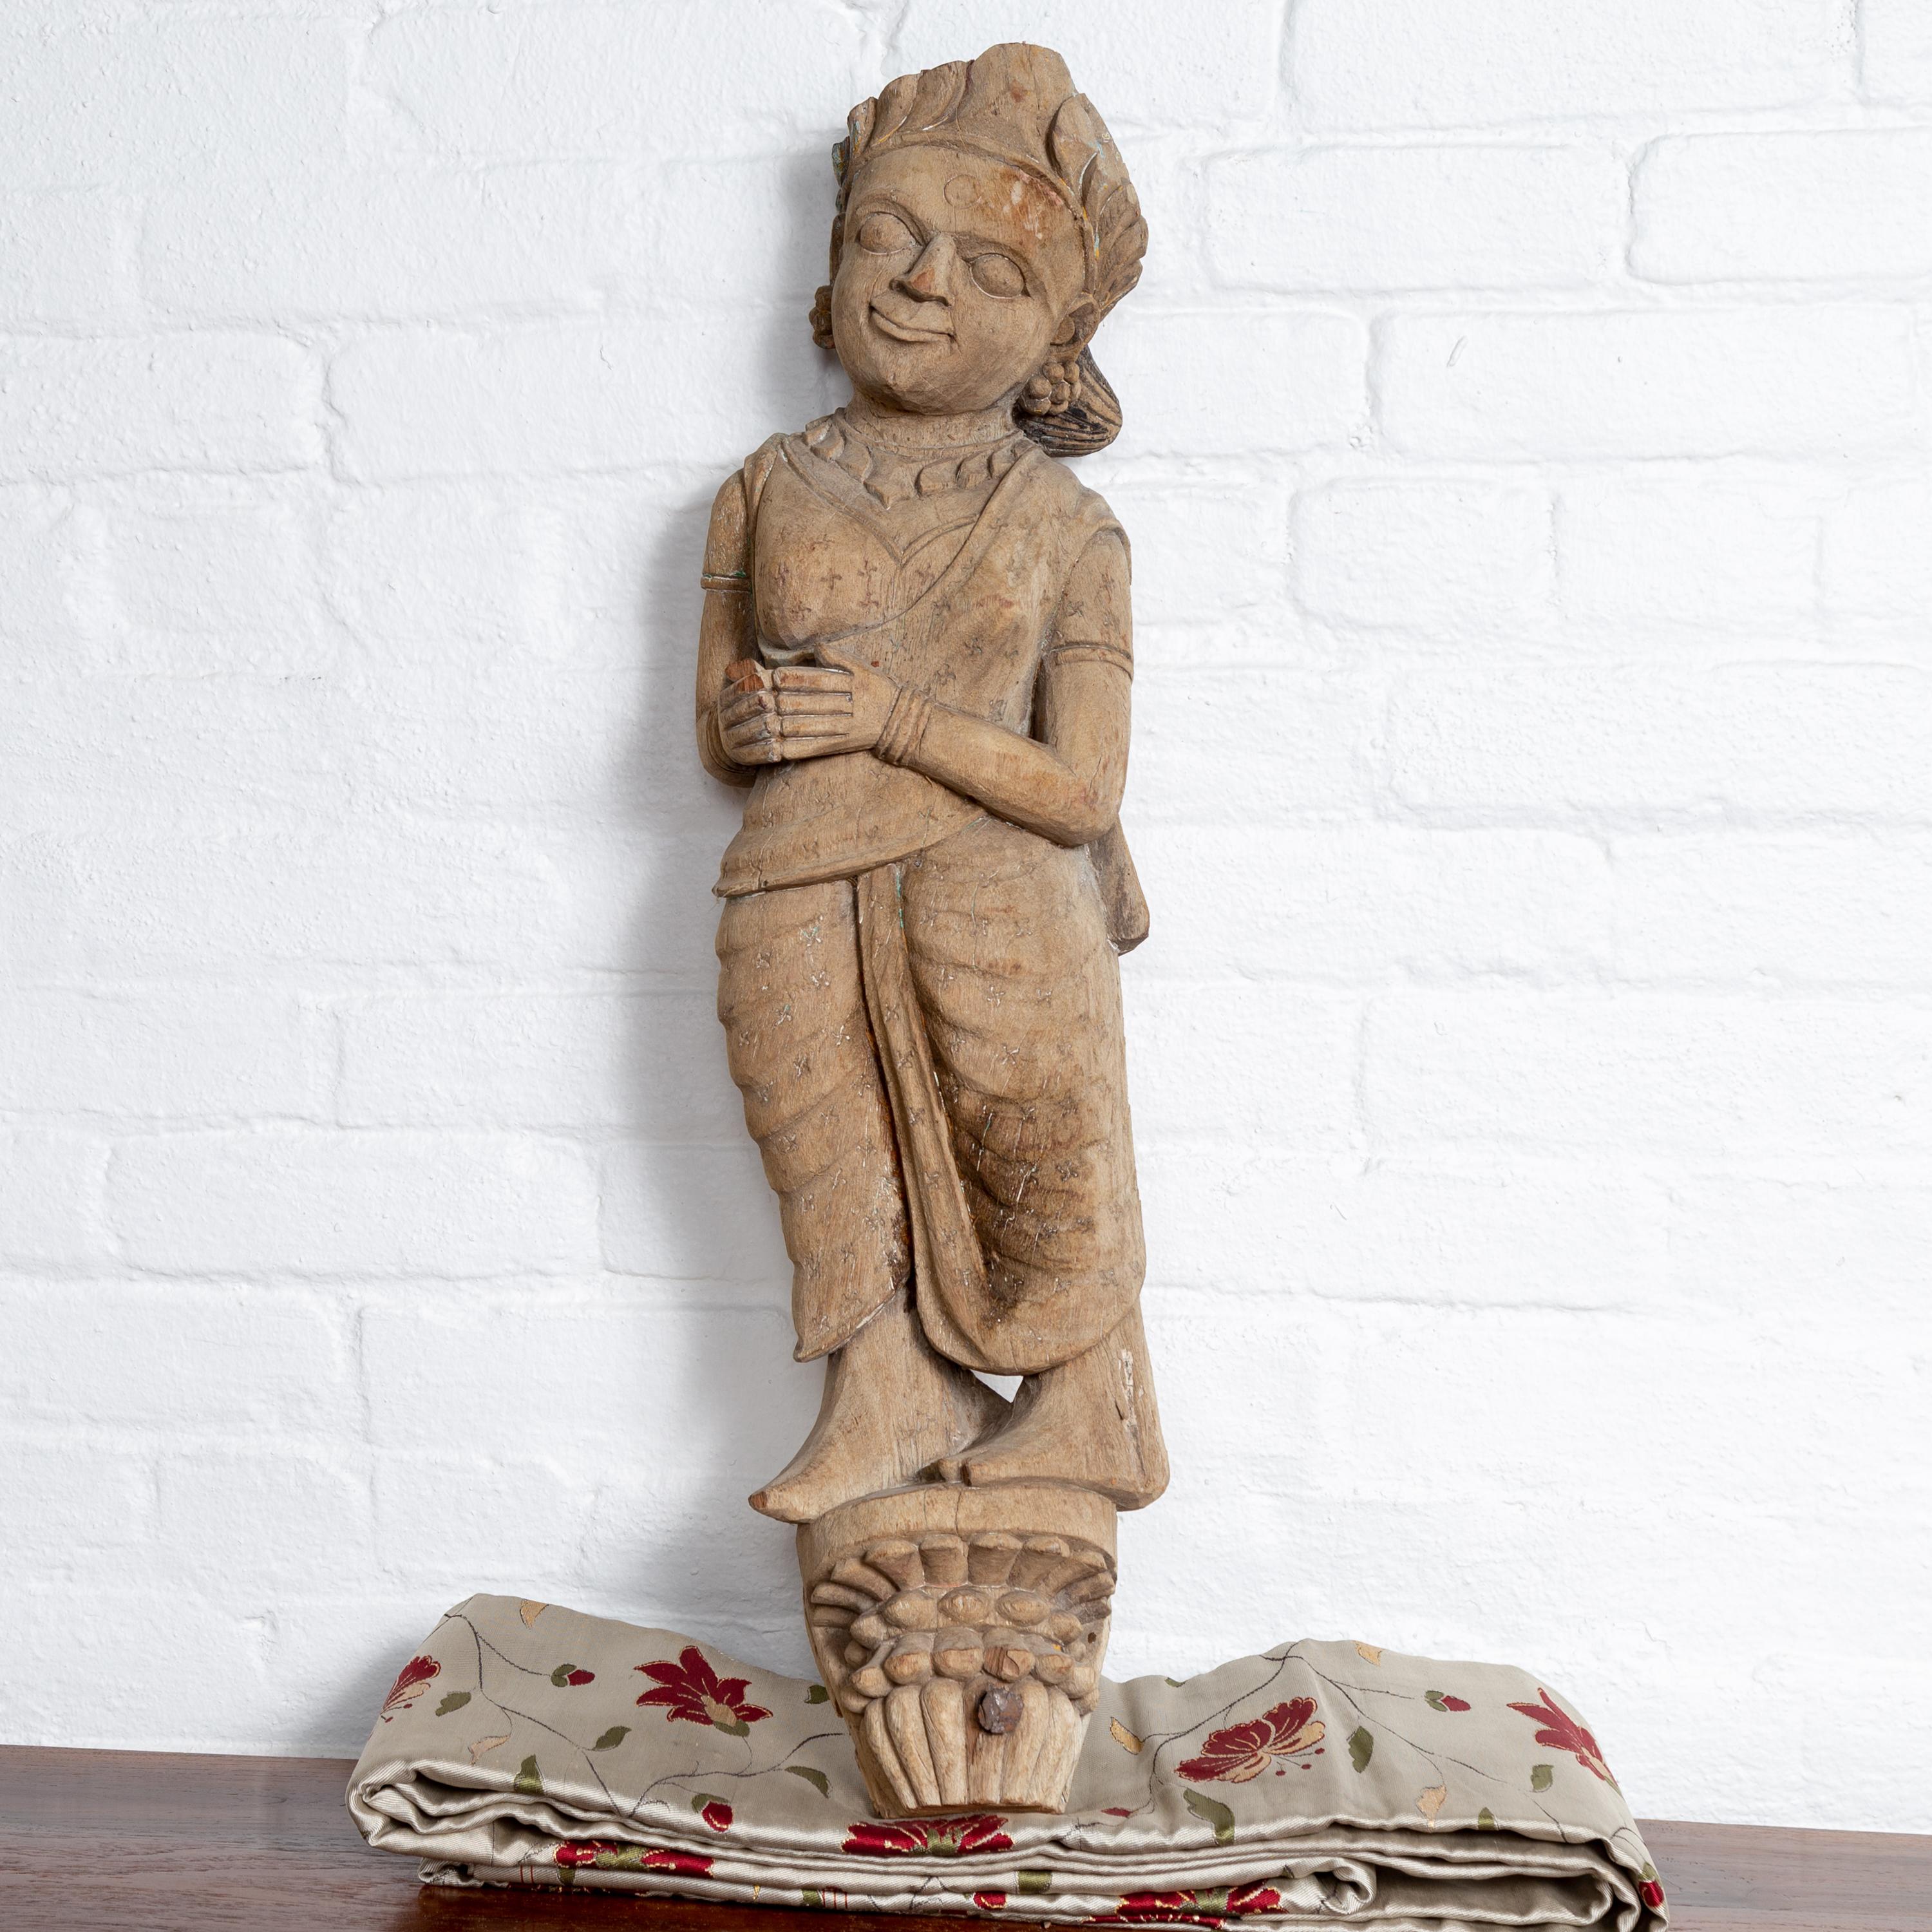 Ancienne sculpture architecturale indienne du début du XXe siècle sculptée à la main dans un temple du Gujarat, représentant une femme souriante. Née dans la partie occidentale de l'Inde, dans l'État du Gujarat, cette exquise sculpture de temple